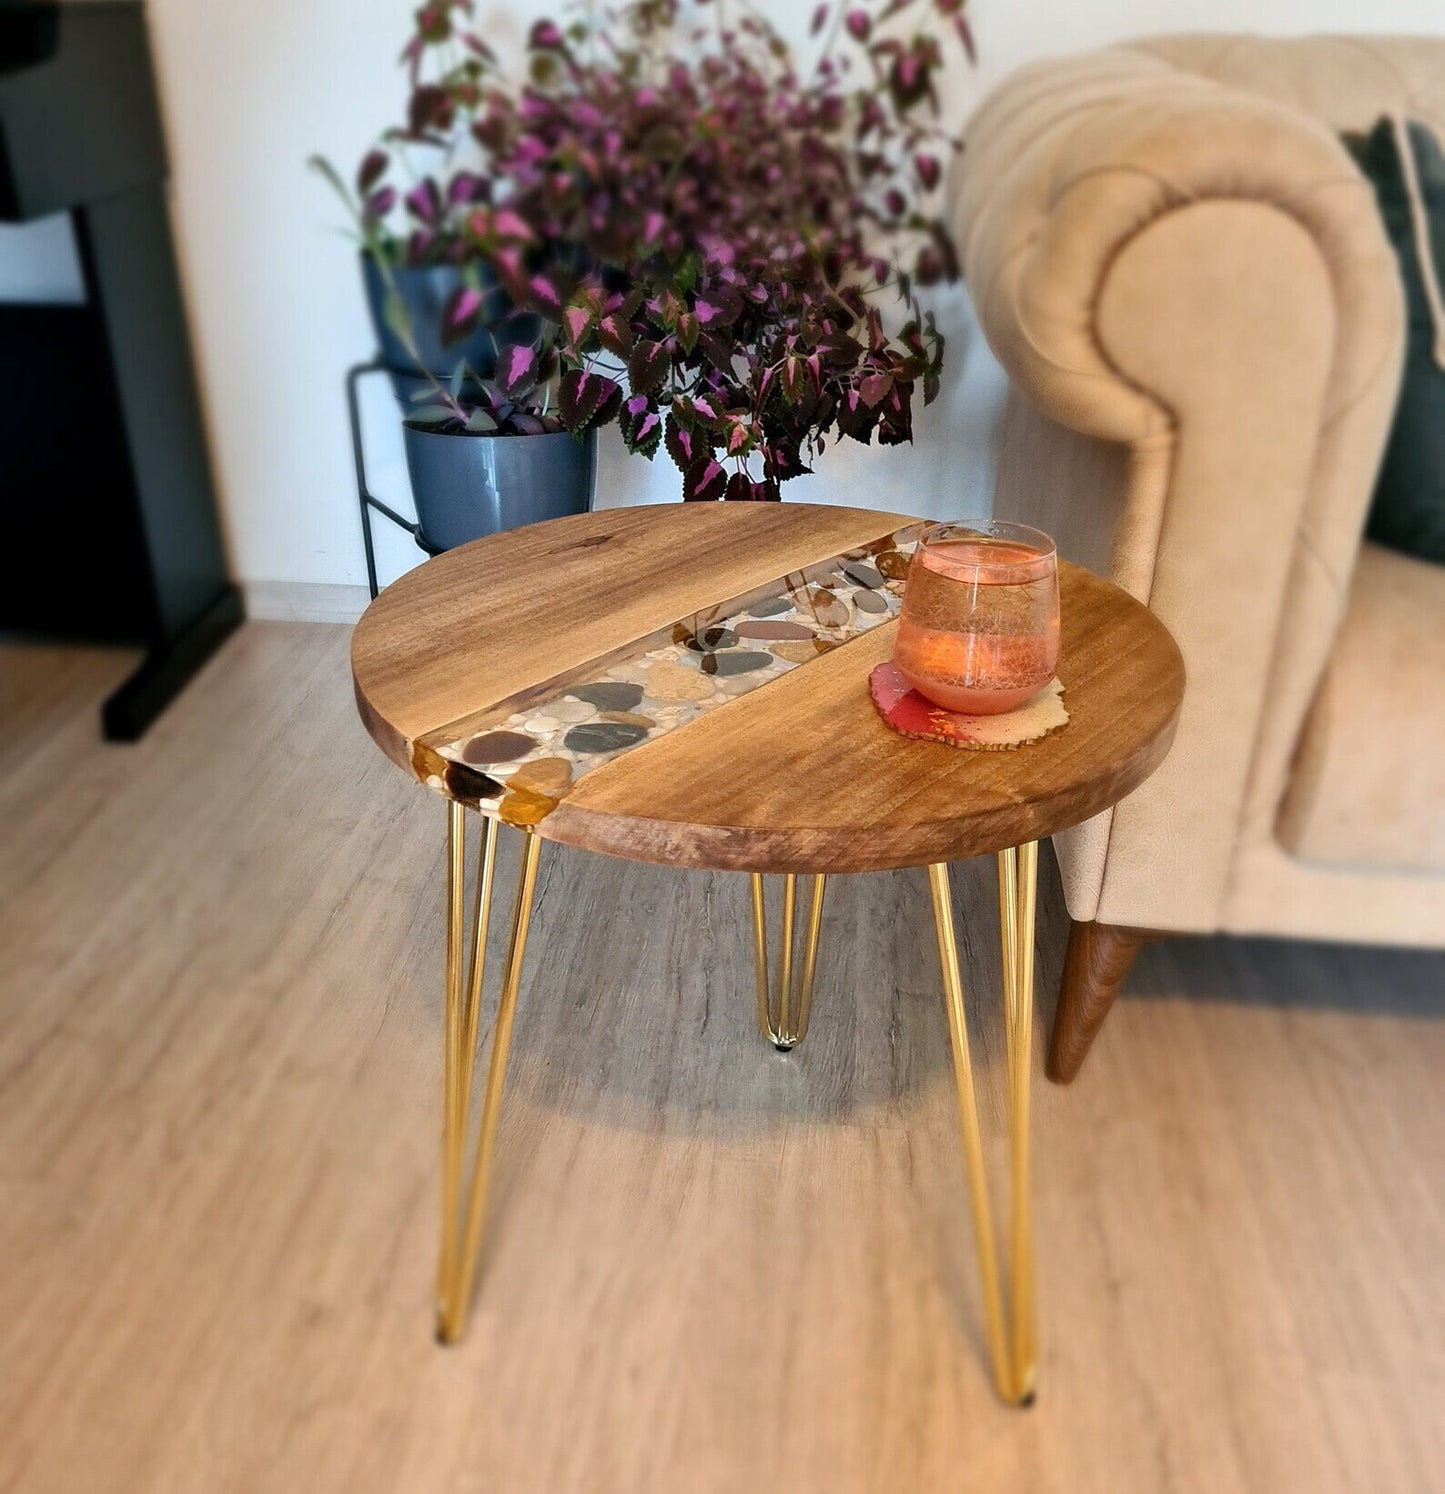 Custom Walnut Wood Coffee Table With Pebble Stones